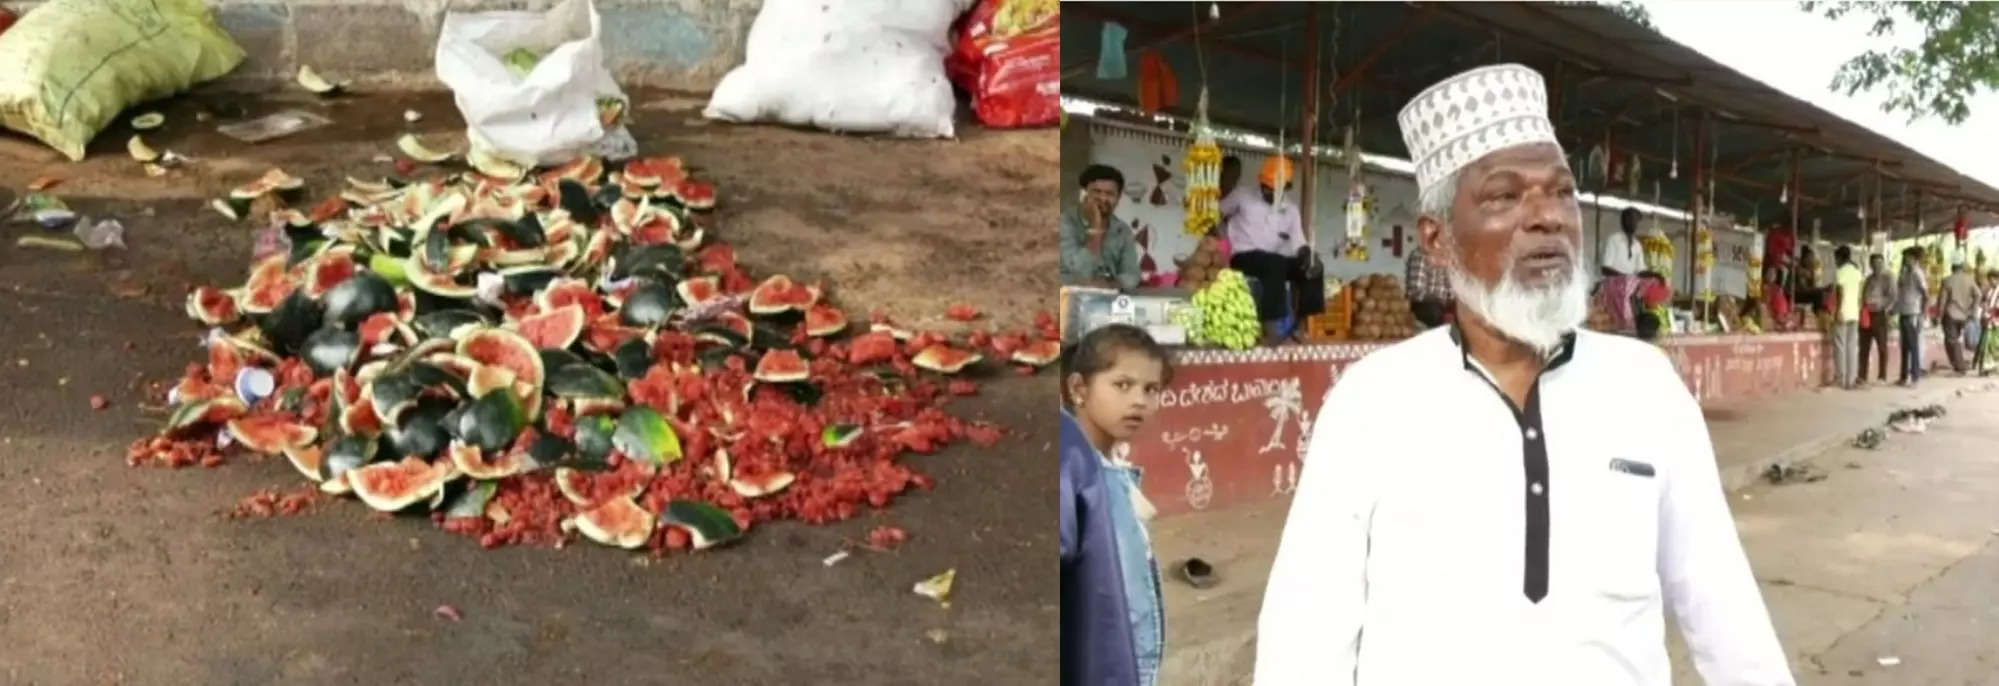 Karnataka: Fringe elements vandalize fruit vendors shop, help pours in